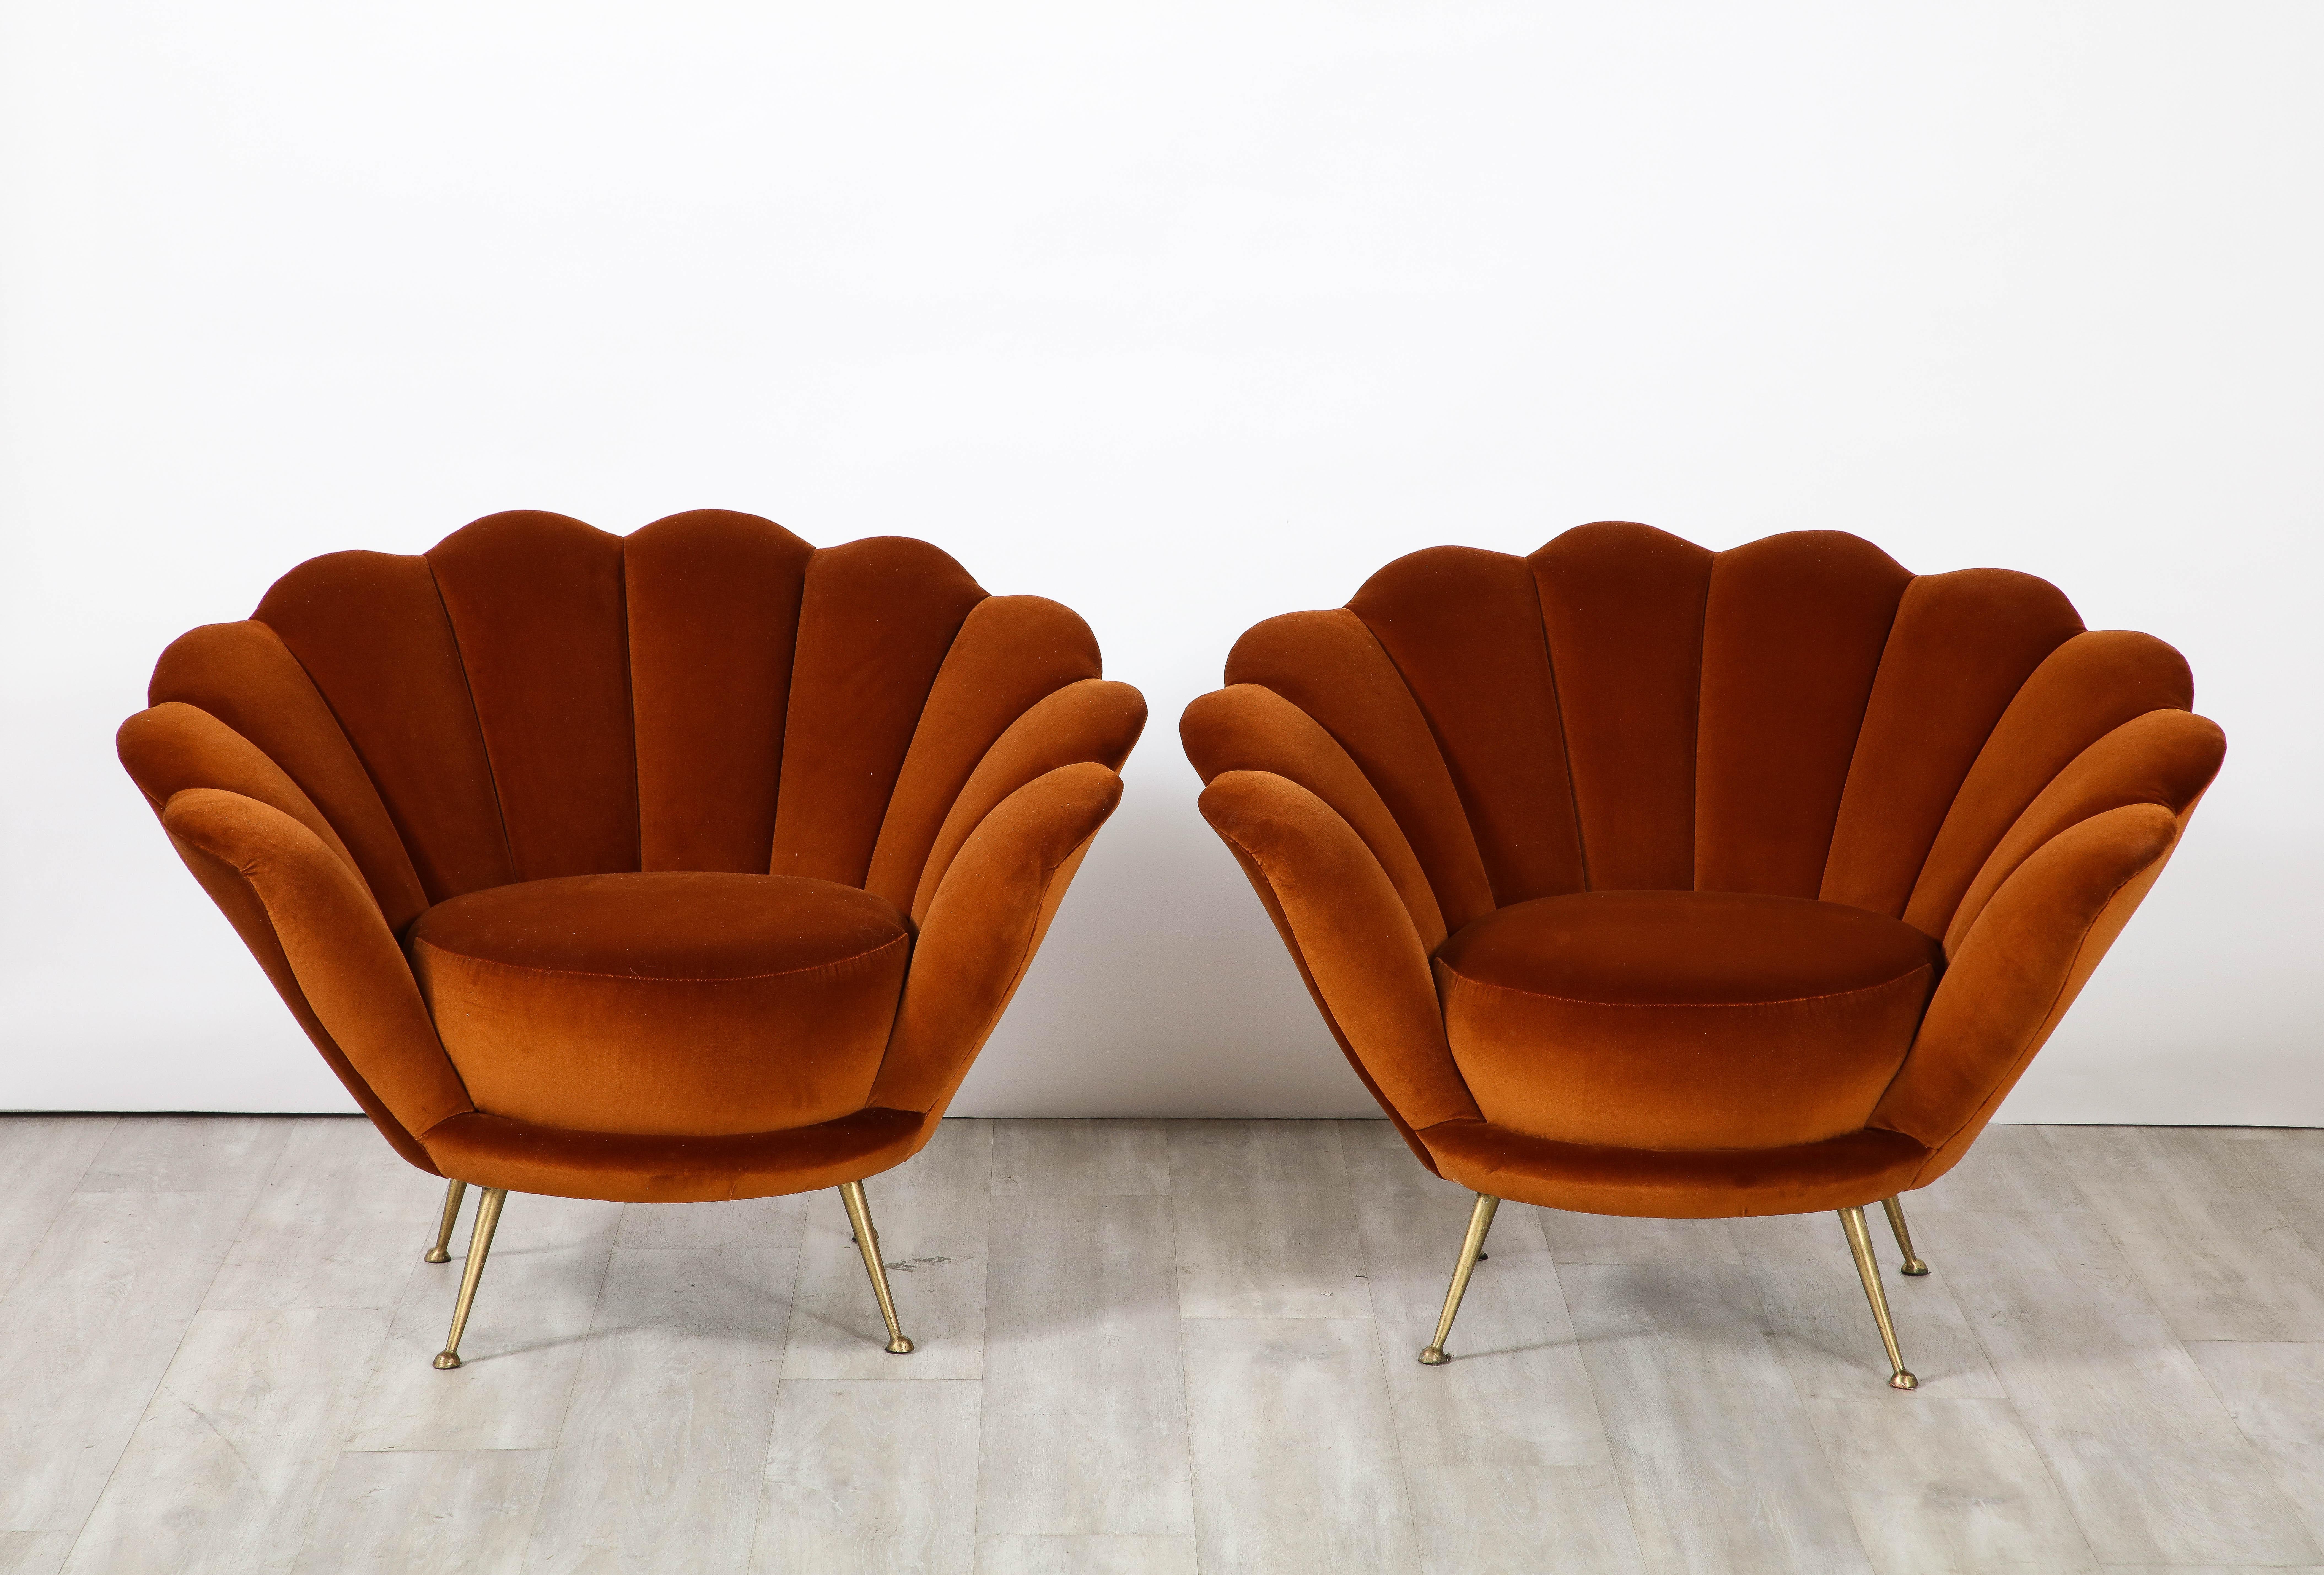 Paire de chaises de salon italiennes des années 1950 au design décadent et à la forme festonnée ou en pétale. Ces chaises de salon classiques et exquises ont été entièrement restaurées et récemment retapissées dans un luxueux et riche velours de